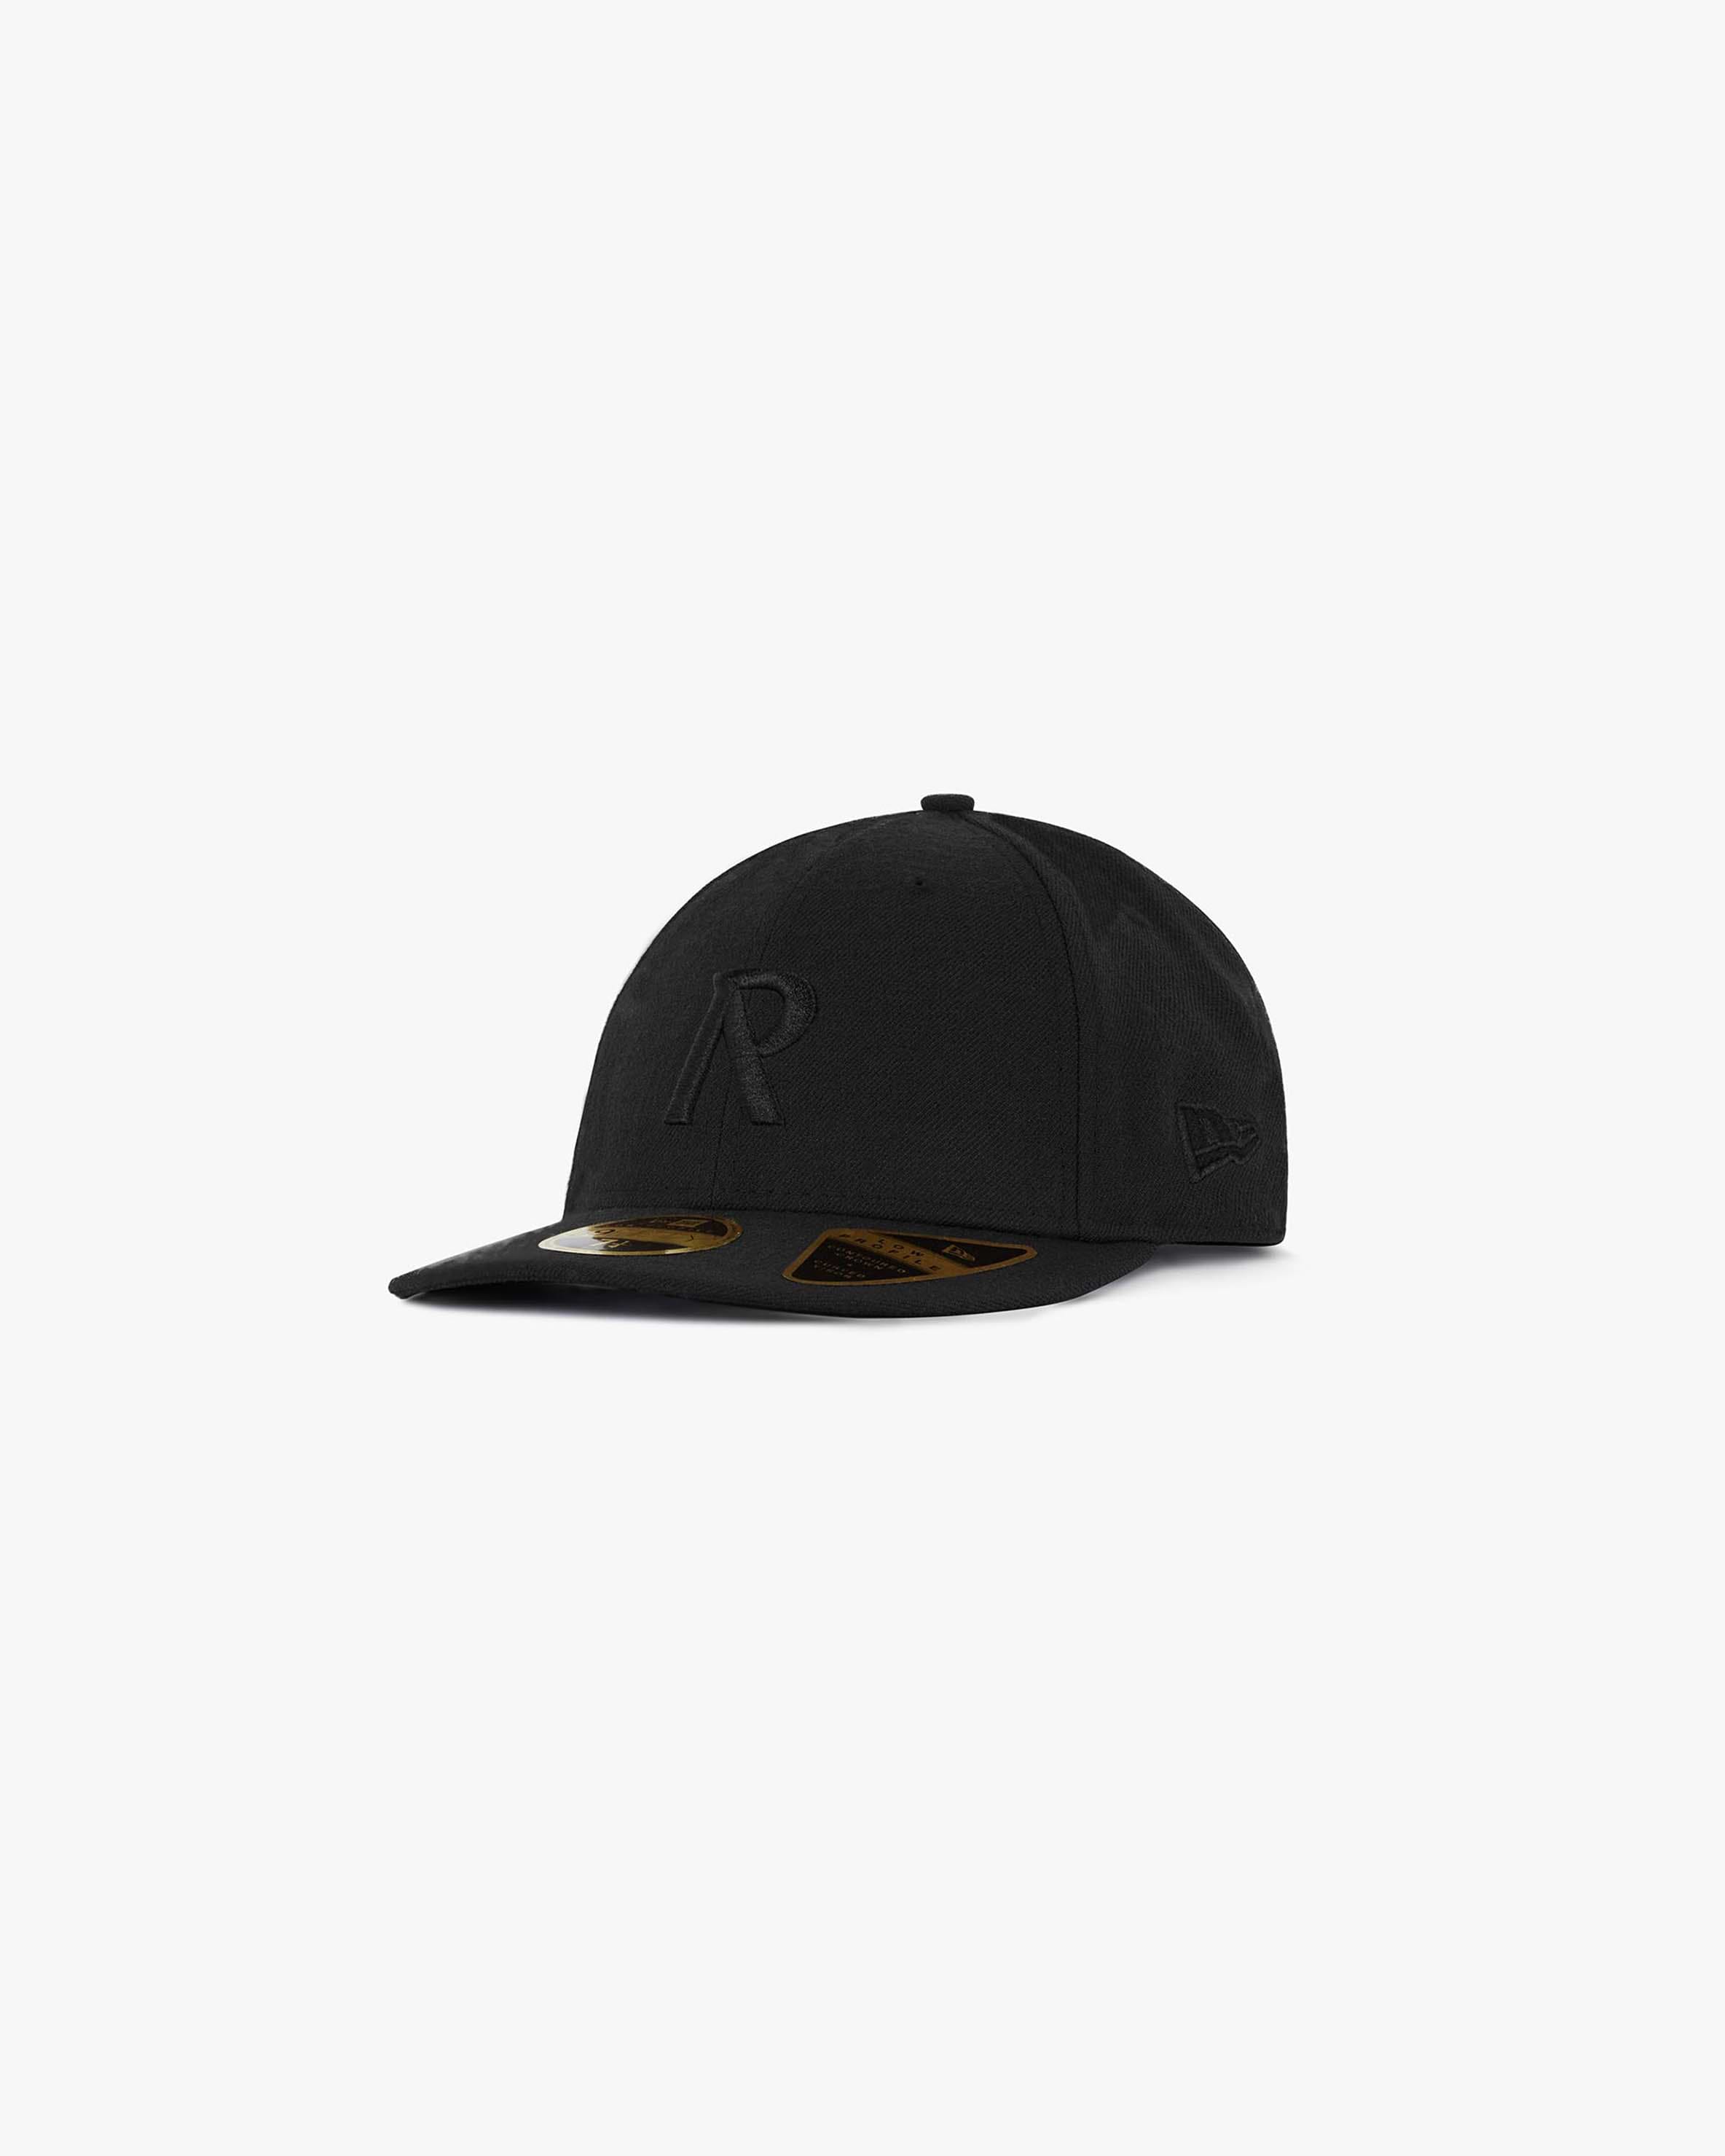 Initial New Era 59Fifty Cap | All Black | REPRESENT CLO